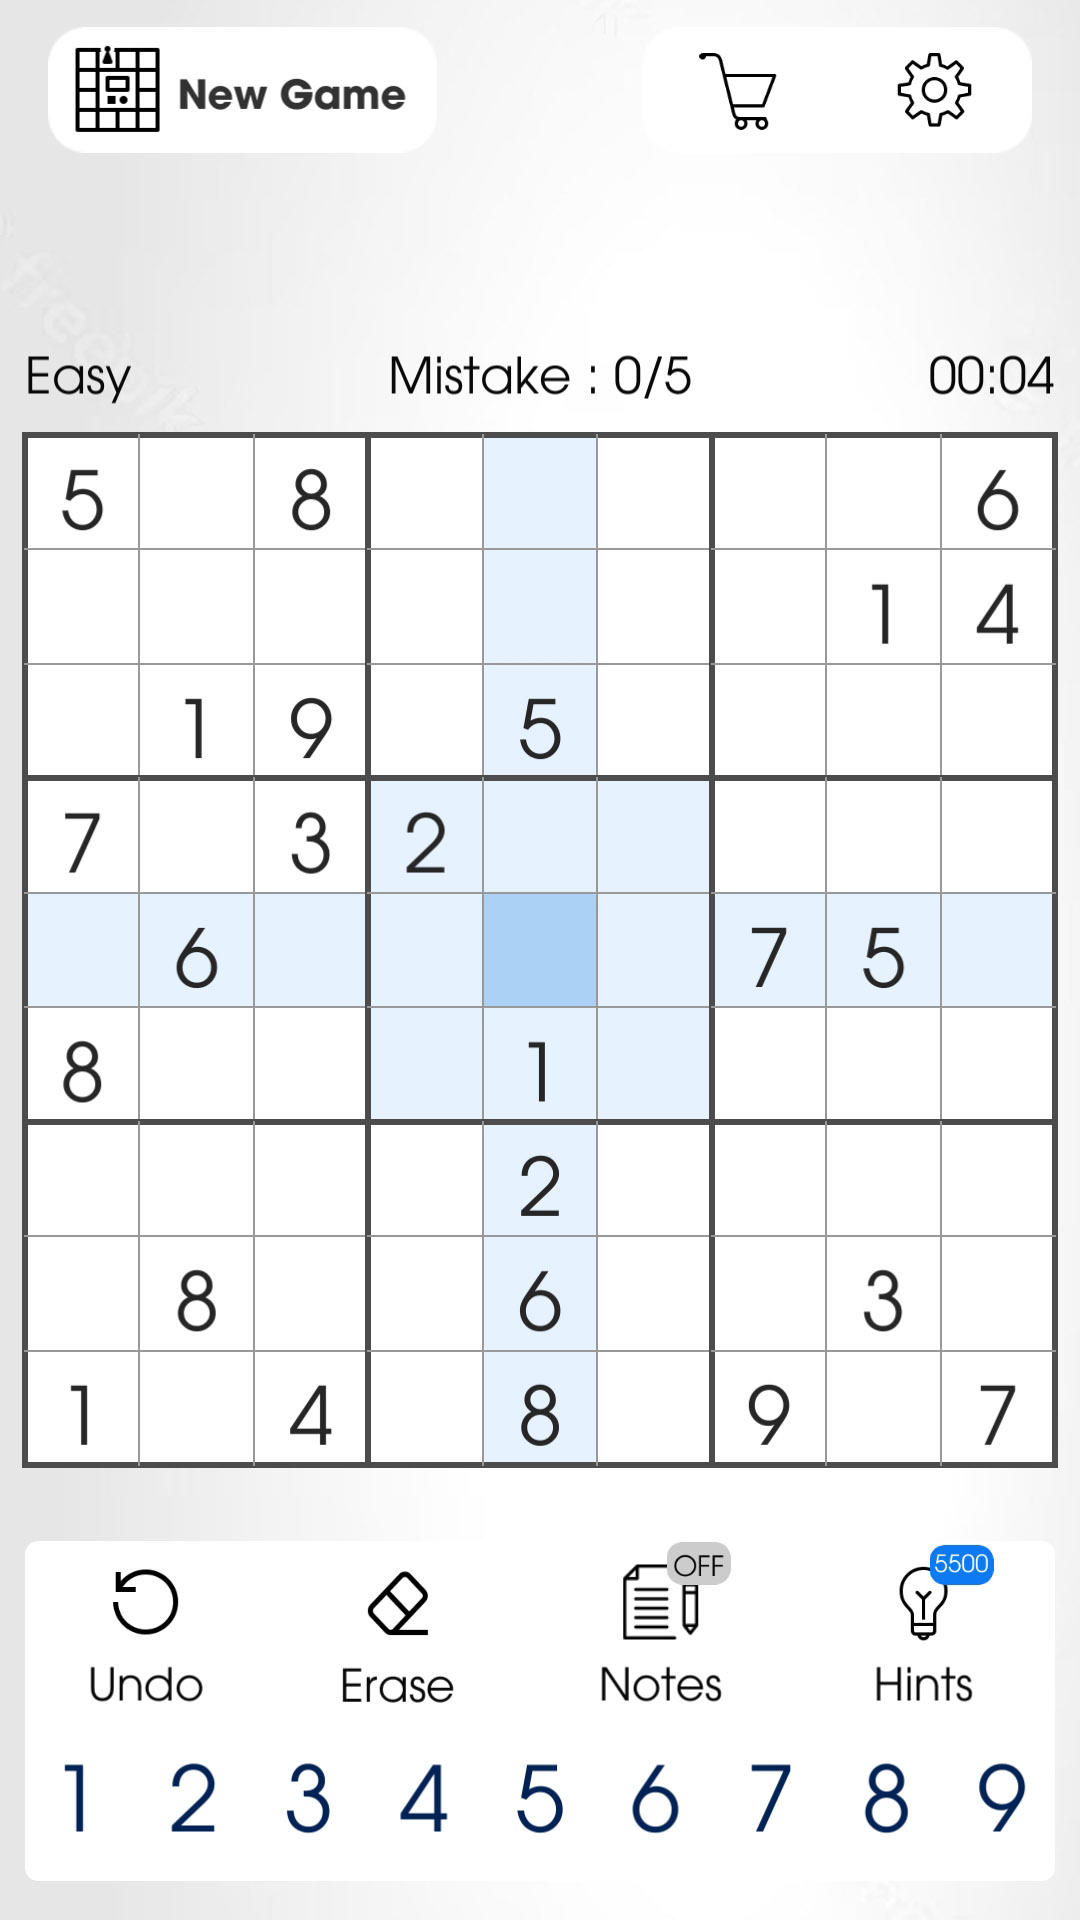 Download do APK de Sudoku Fácil para Android